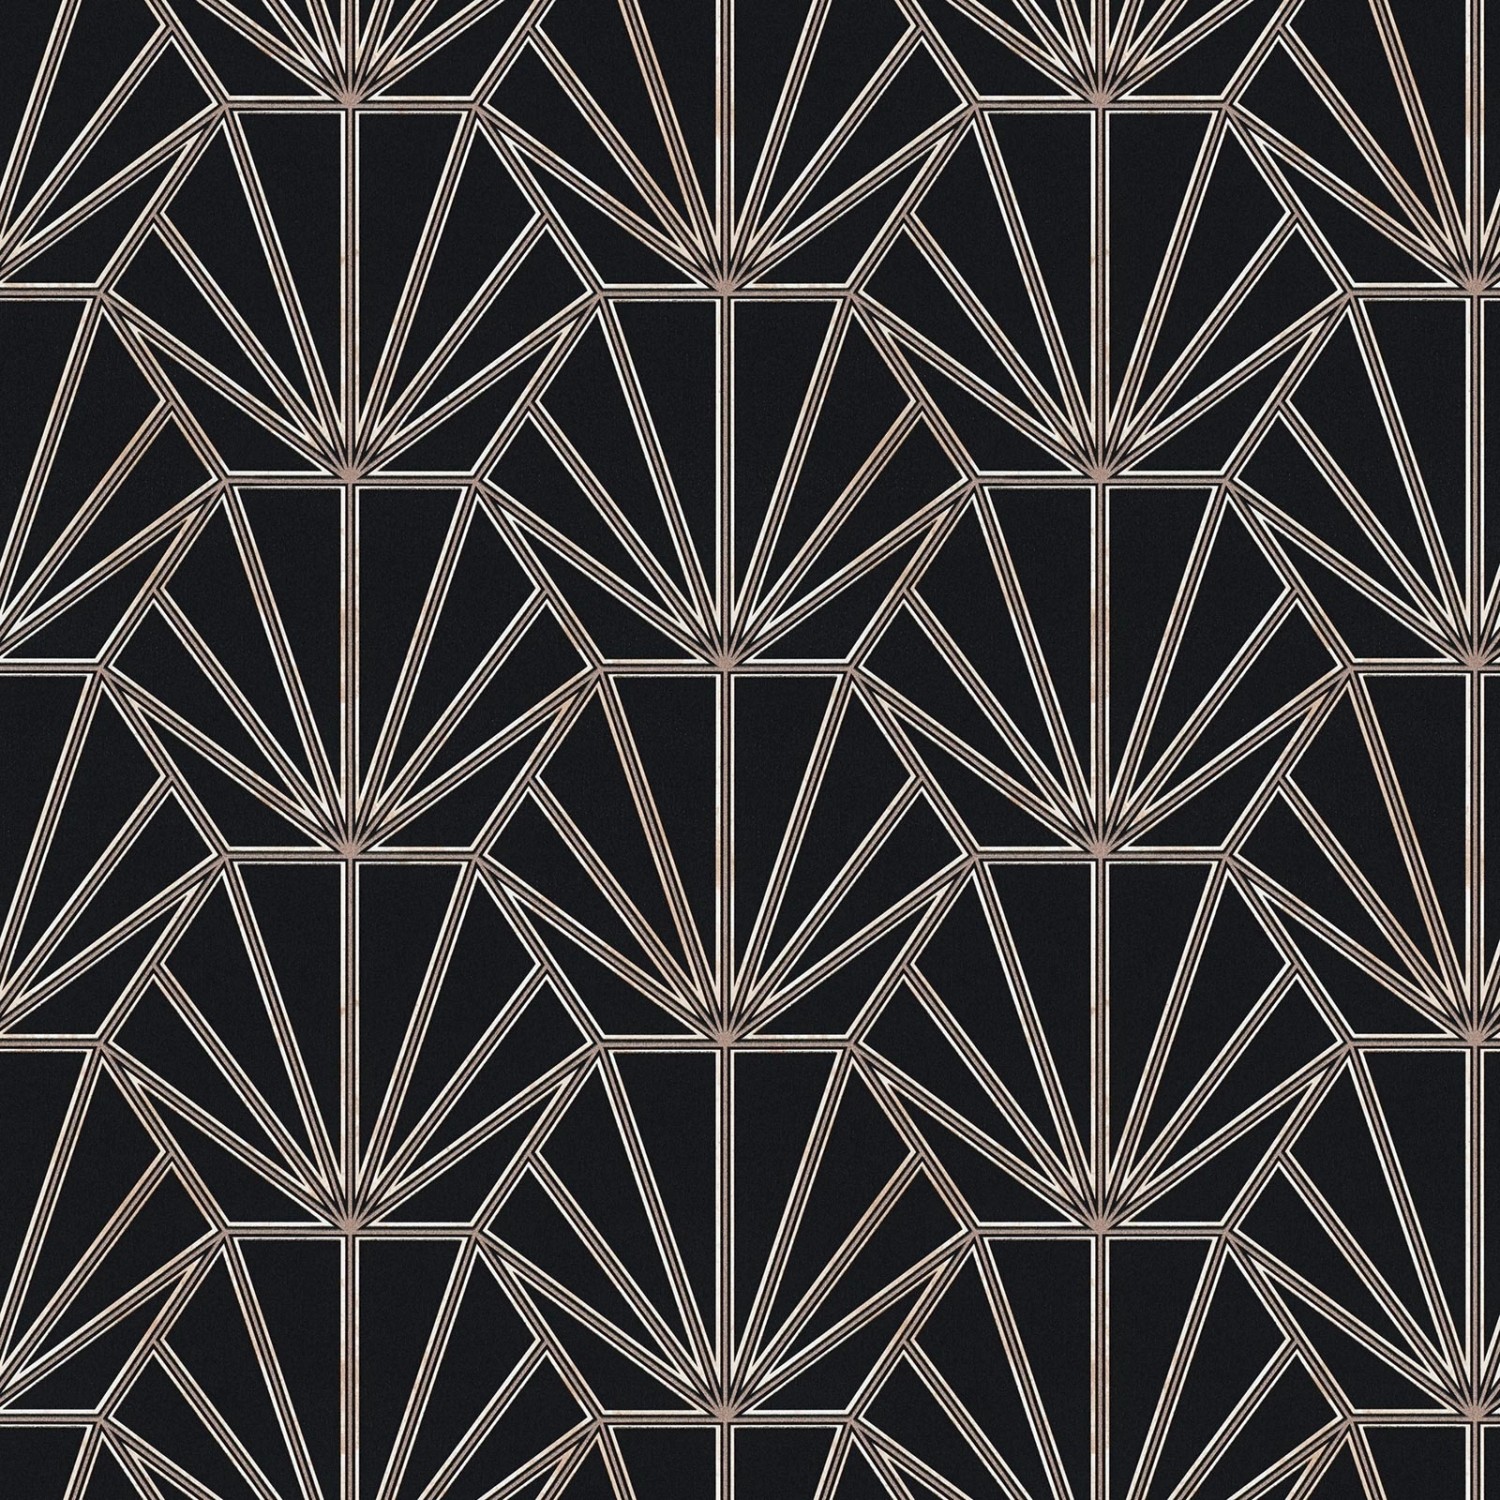 Bricoflor Art Deco Tapete in Schwarz und Grau Moderne Tapete Im 20er Jahre Stil Elegante Vliestapete Ideal für Schlafzim